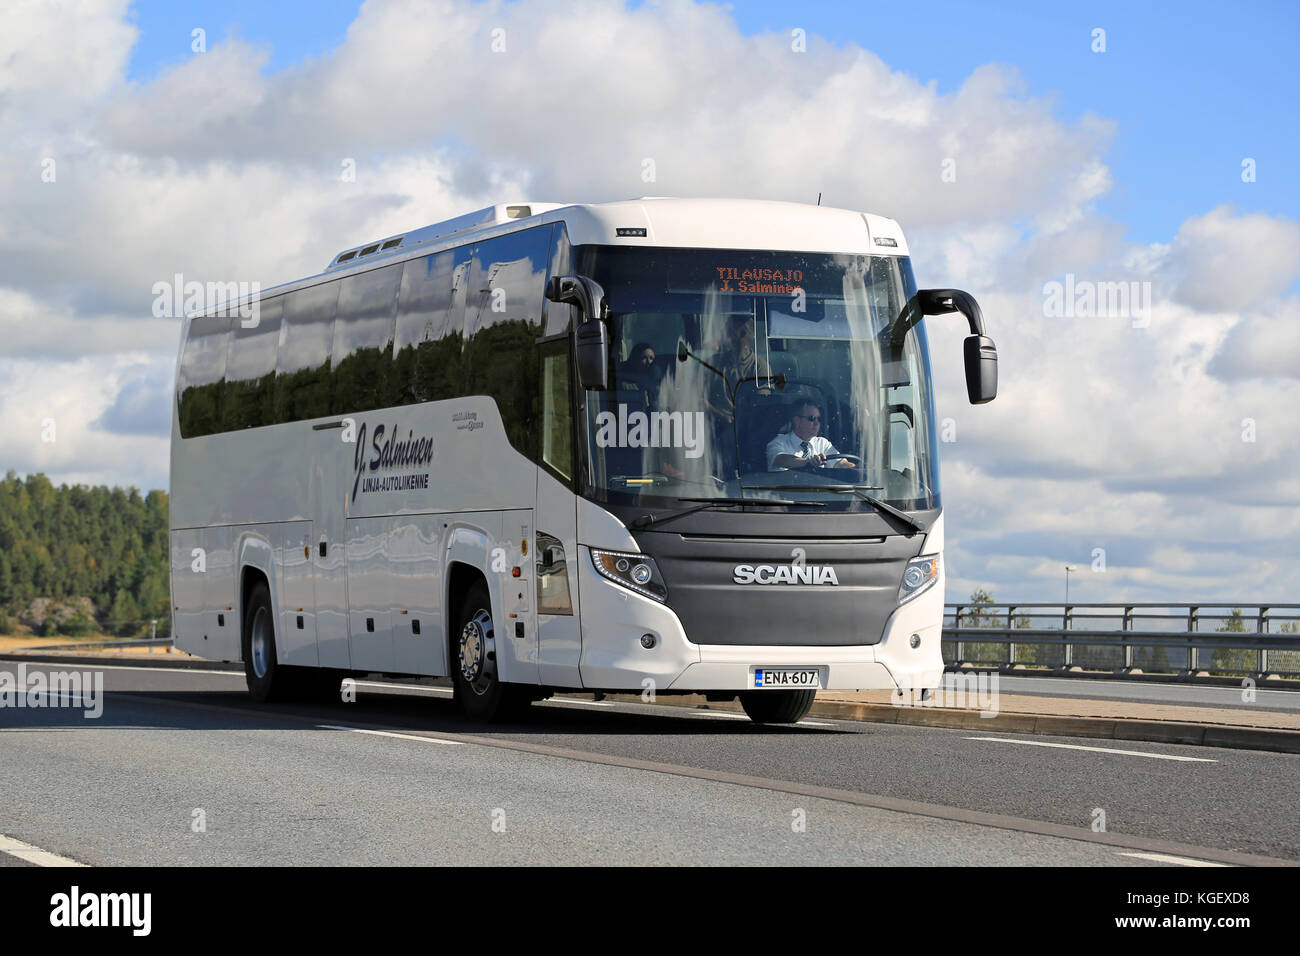 SALO, FINLANDIA - 29 AGOSTO 2015: Autobus bianco Scania Touring sulla strada a Salo. Lo Scania Touring è un pullman turistico con Higer bo di costruzione cinese Foto Stock